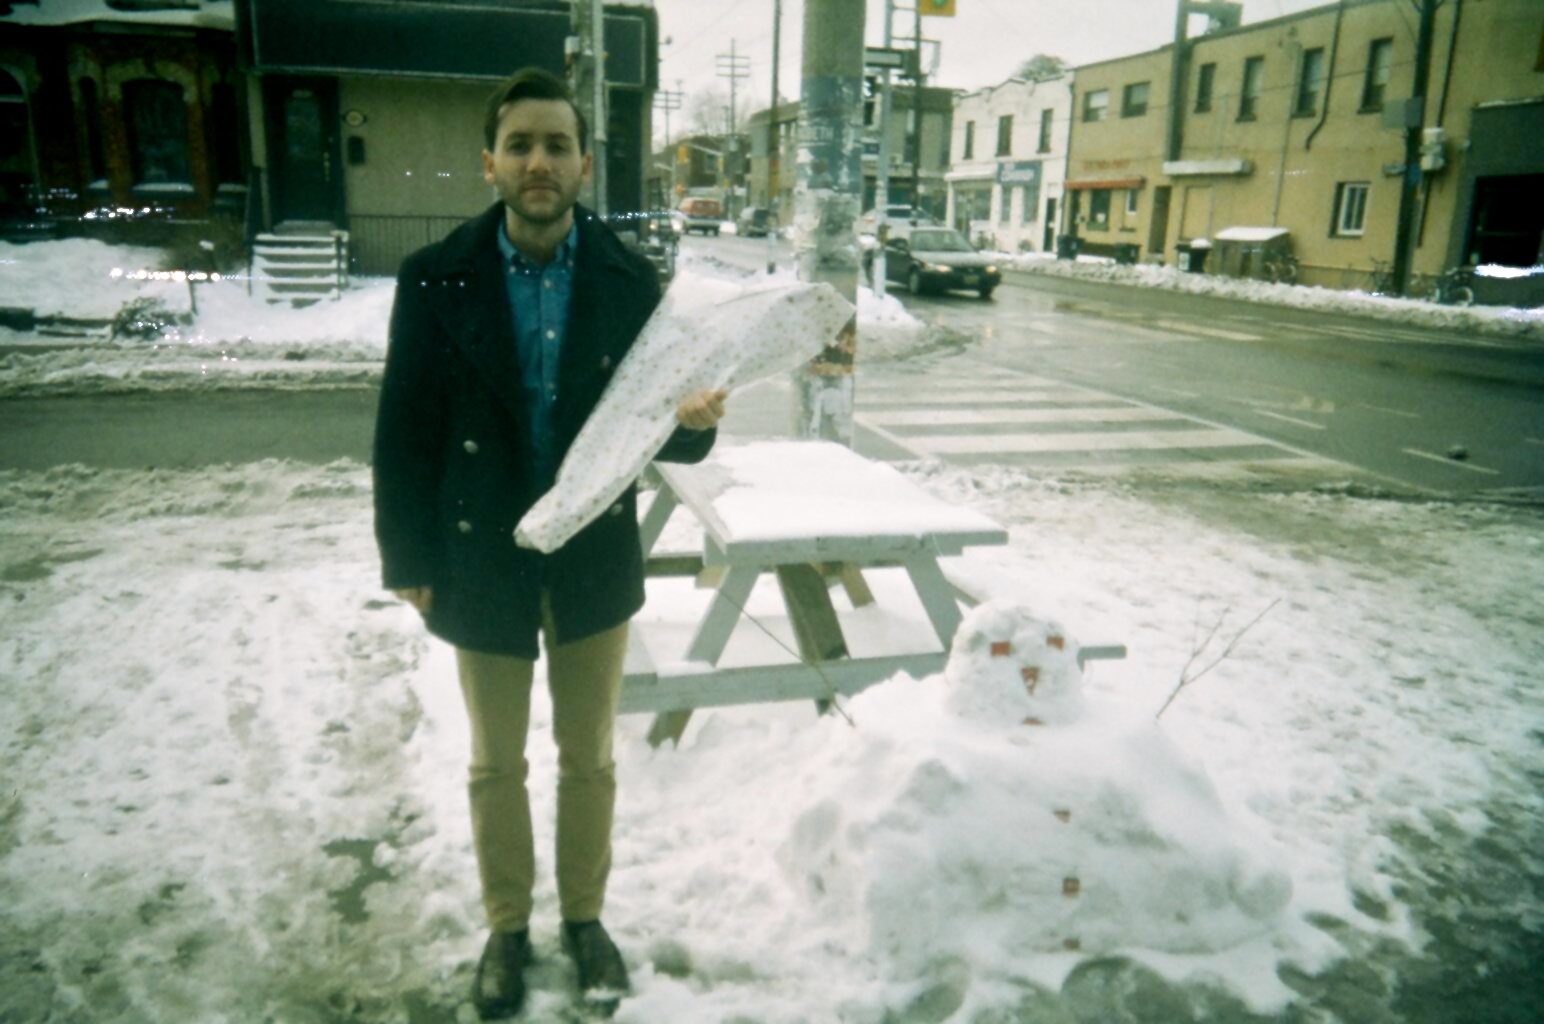 Russ + A melted snowman